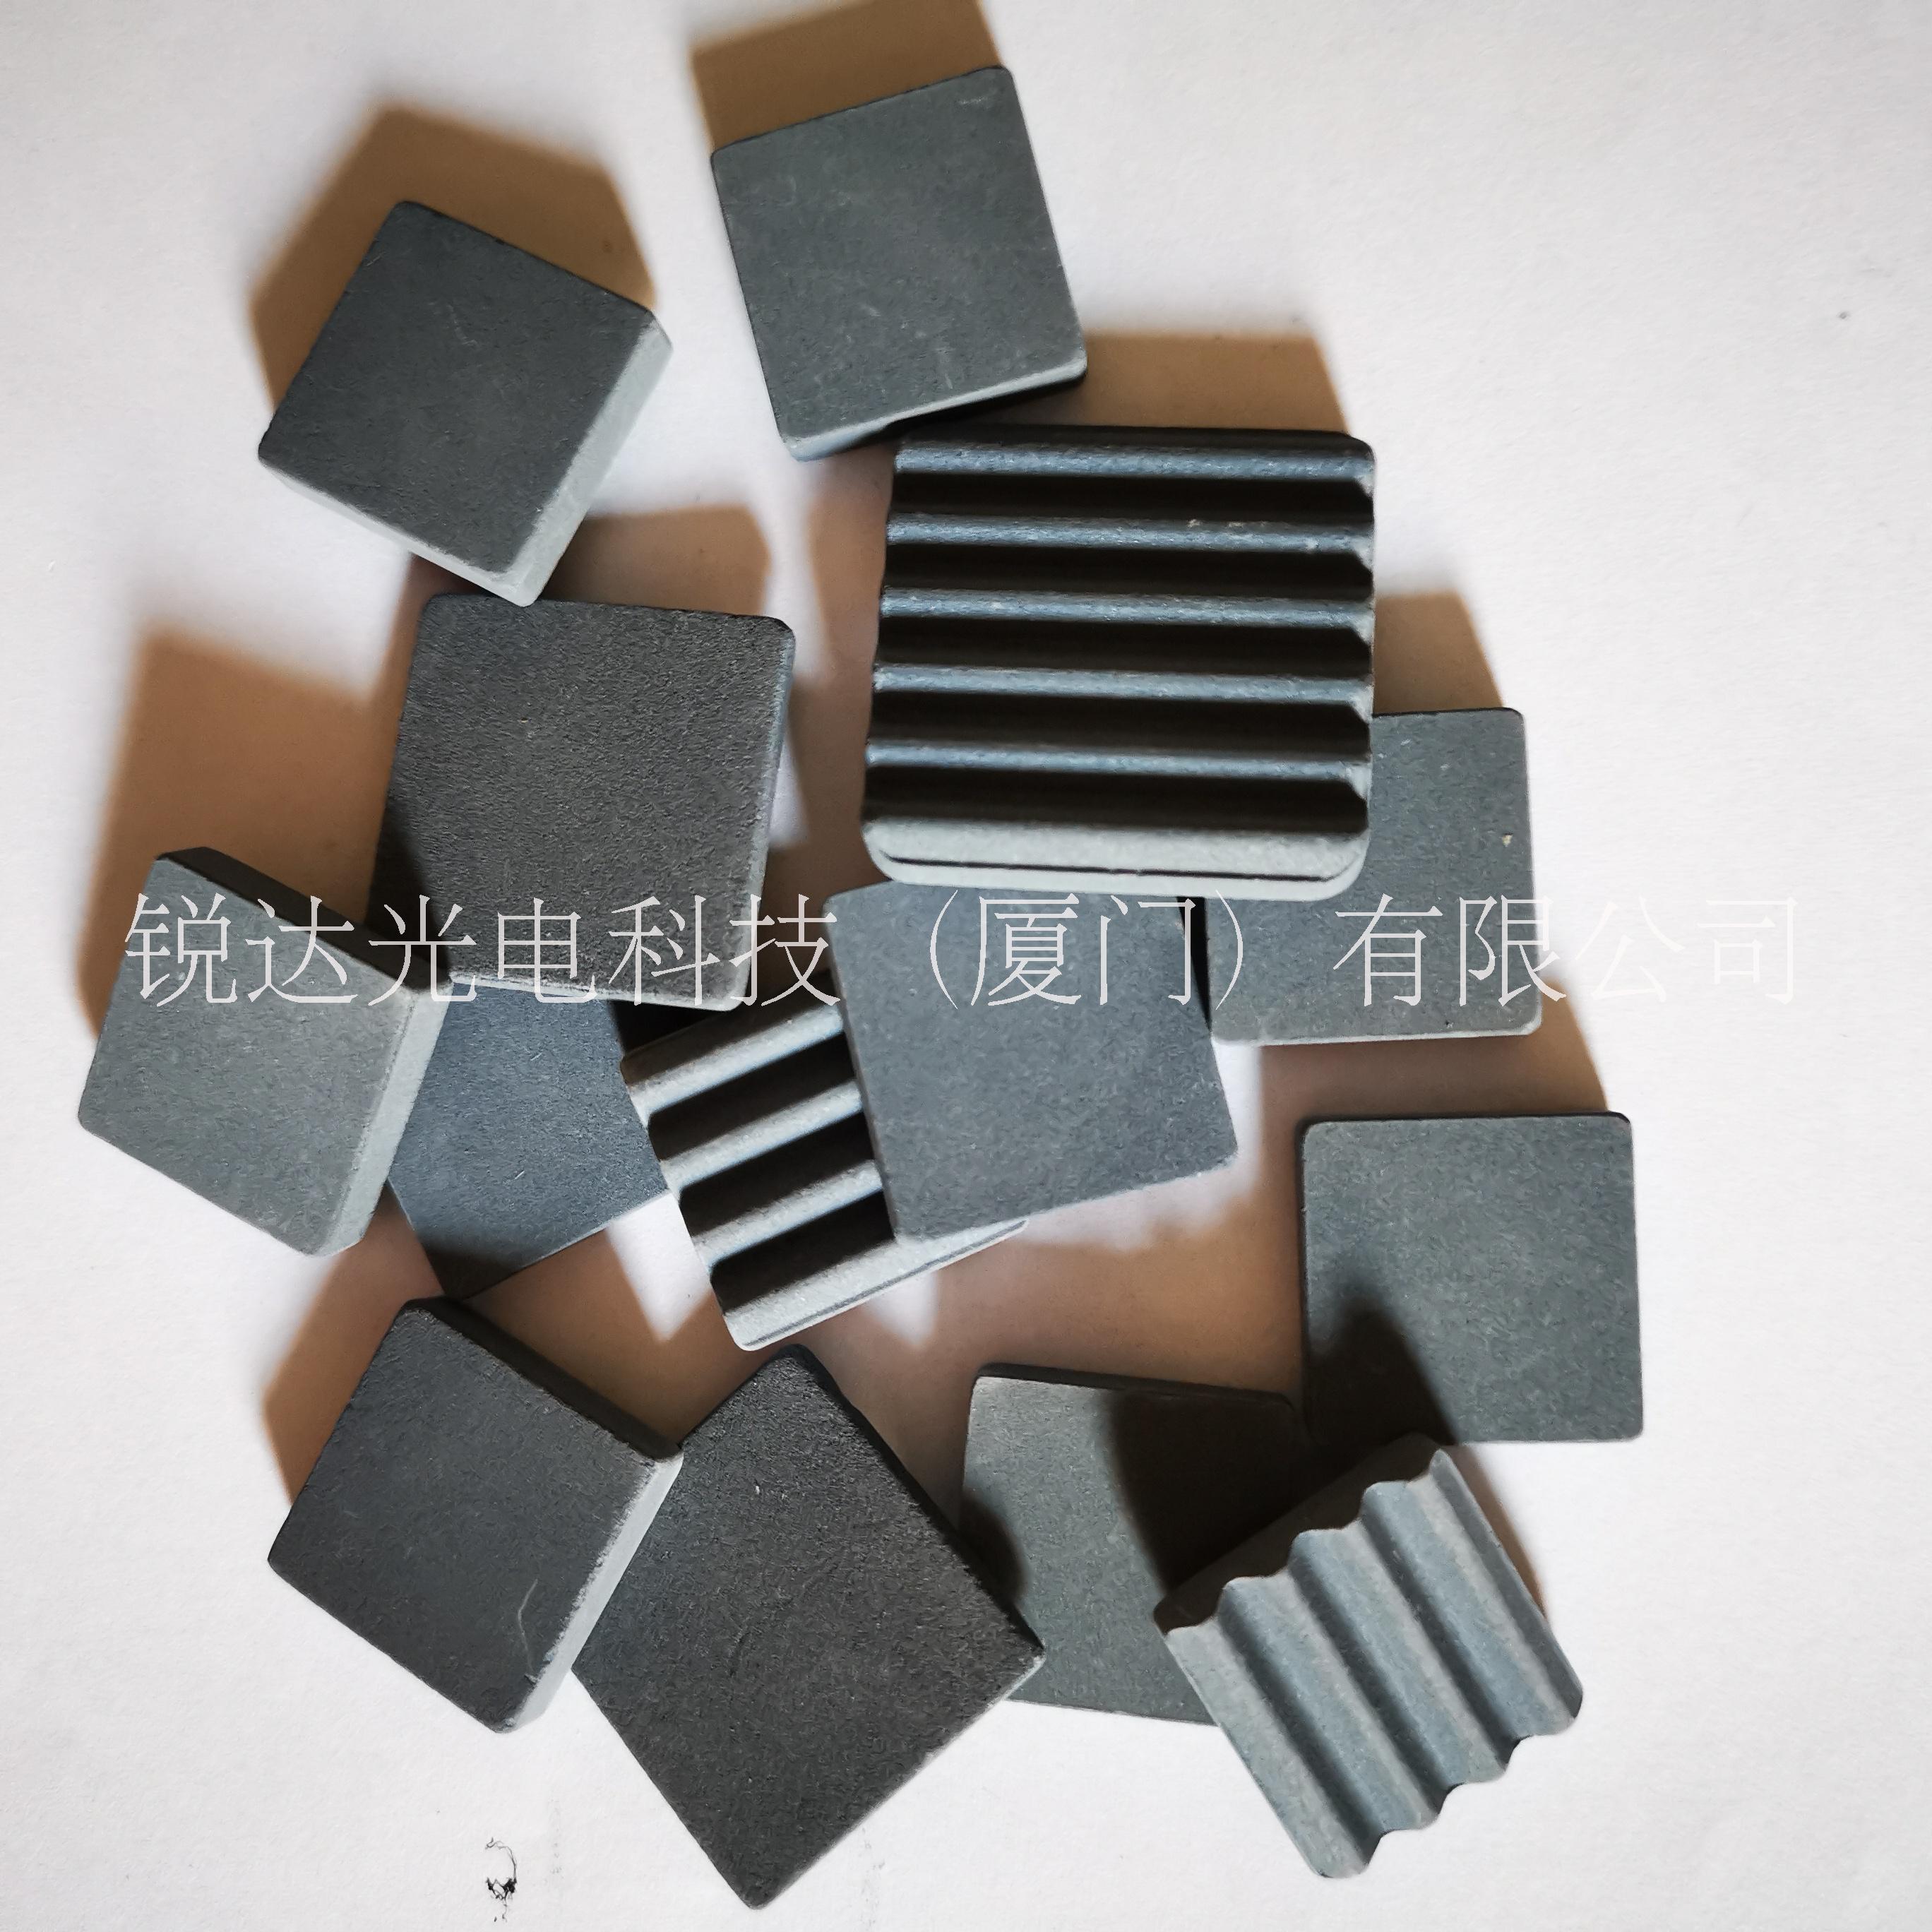 惠州陶瓷散热片厂家 电视机顶盒子陶瓷散热片20*20*5.0mm 陶瓷散热片样品、规格